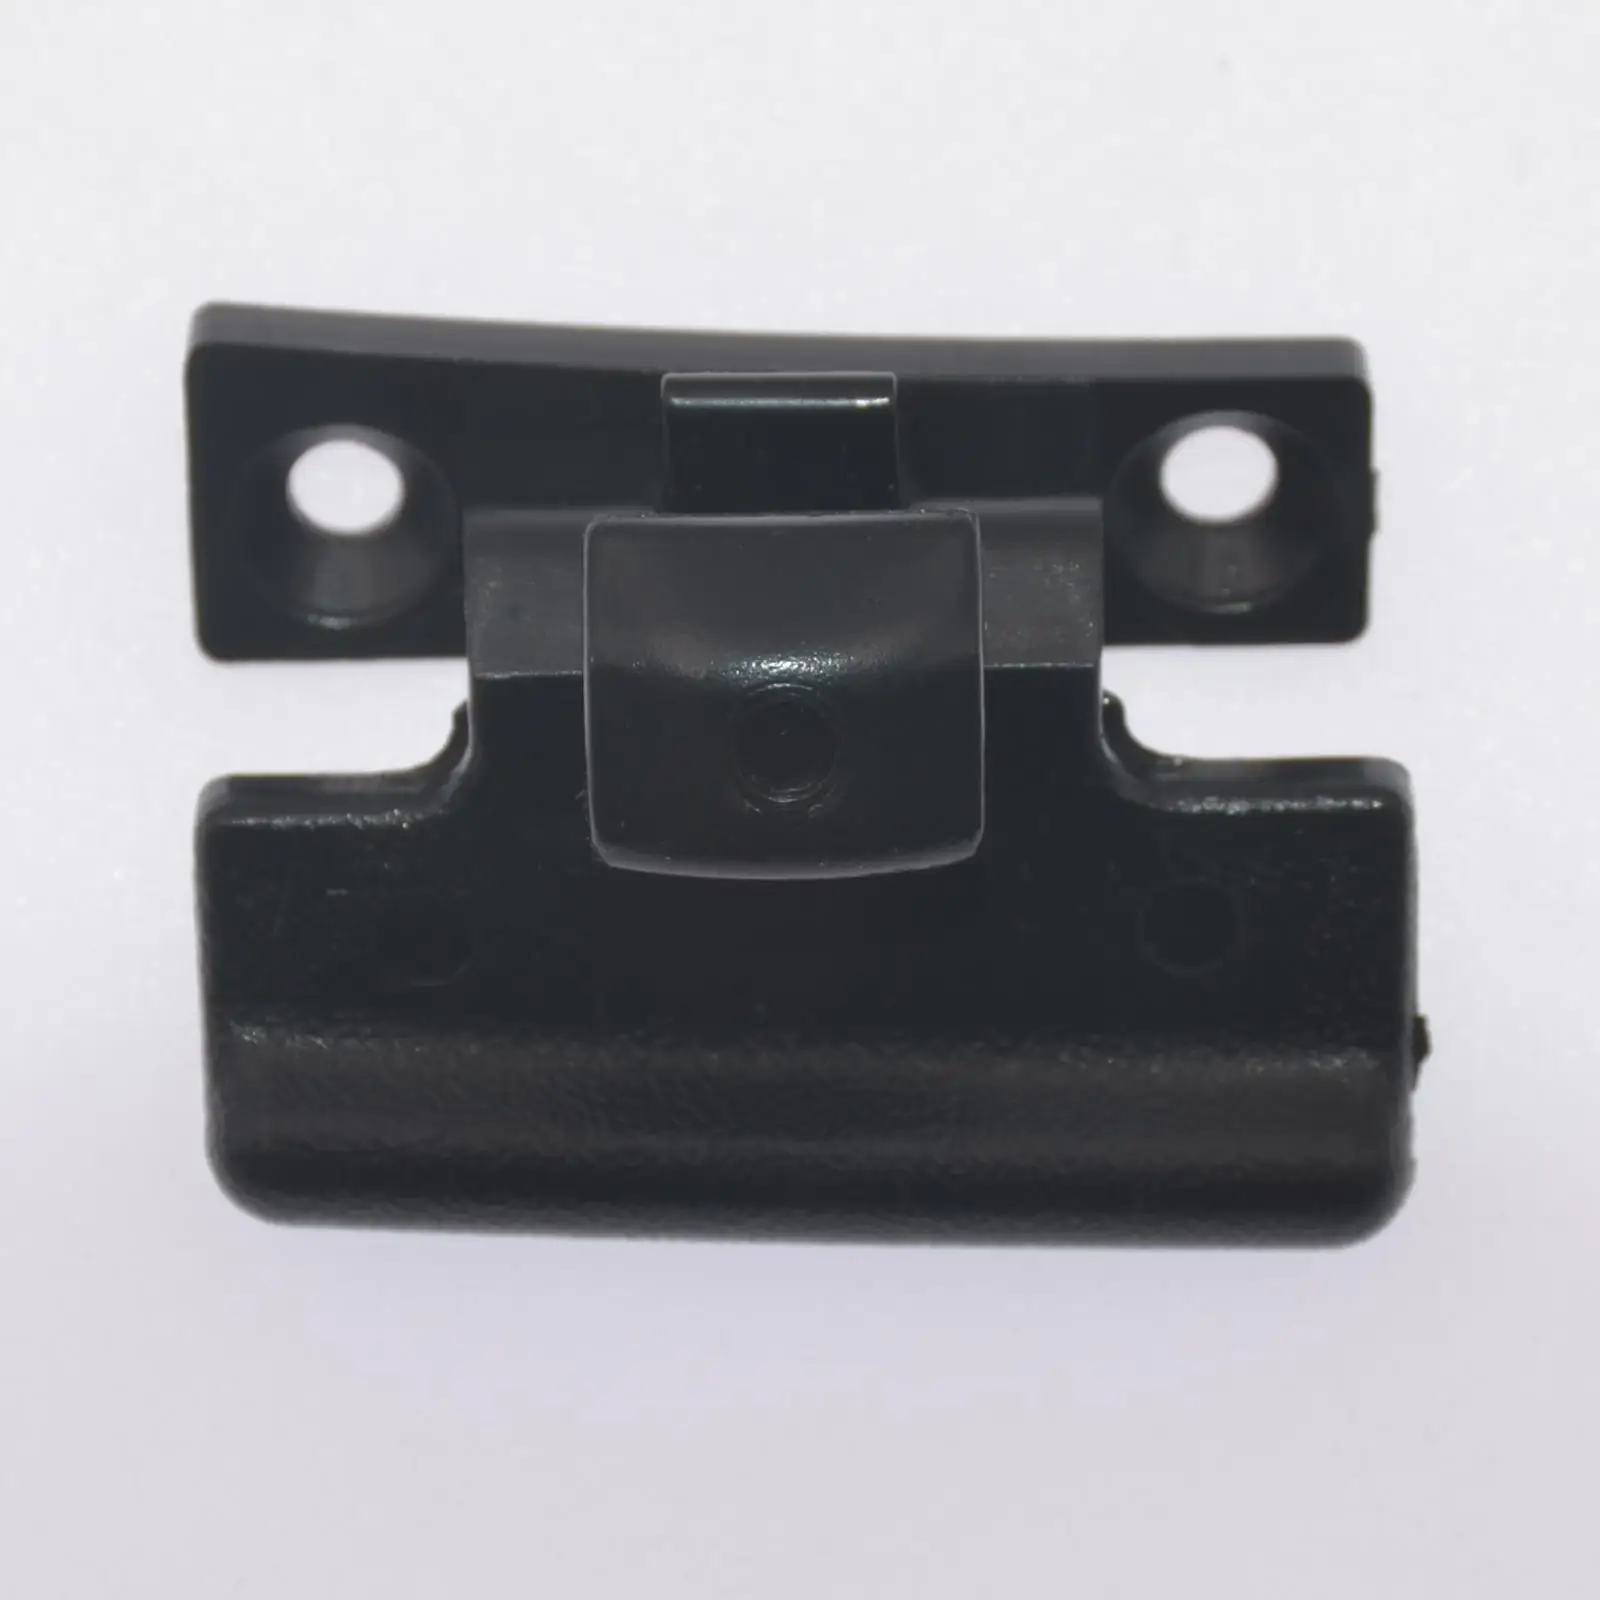 Upper Armrest Lid Latch Replacement Automotive Central Storage Box Lid clip for Mitsubishi Pajero V75 V77 V73 V97